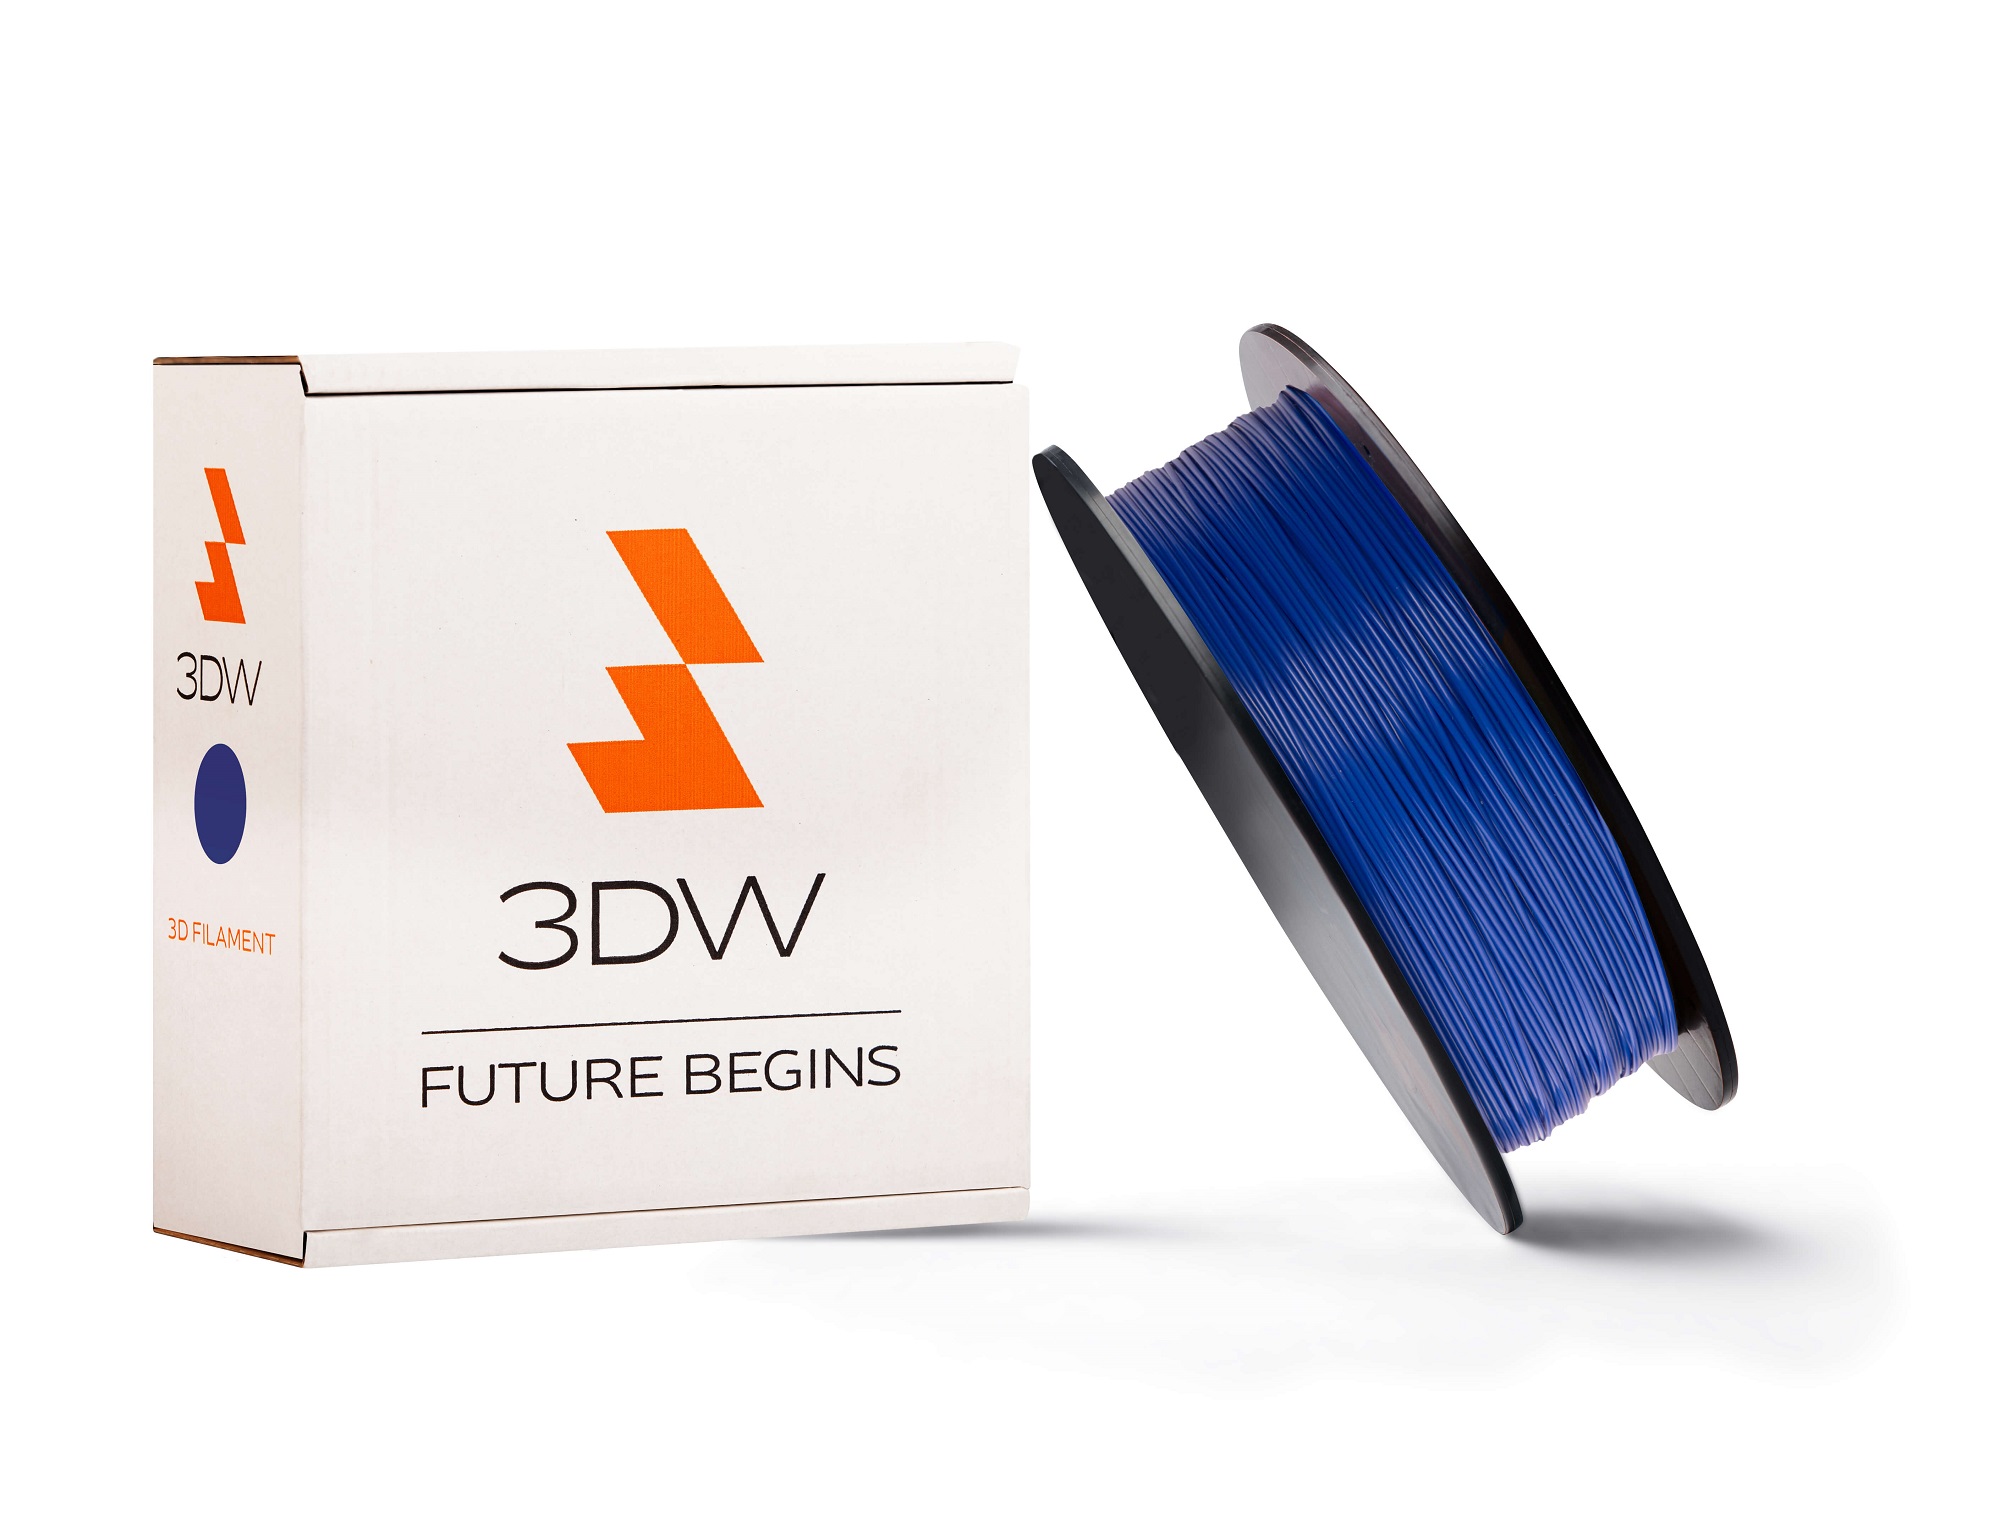 3DW - PLA filament 1,75mm tm.modrá, 0,5 kg,tisk190-210°C